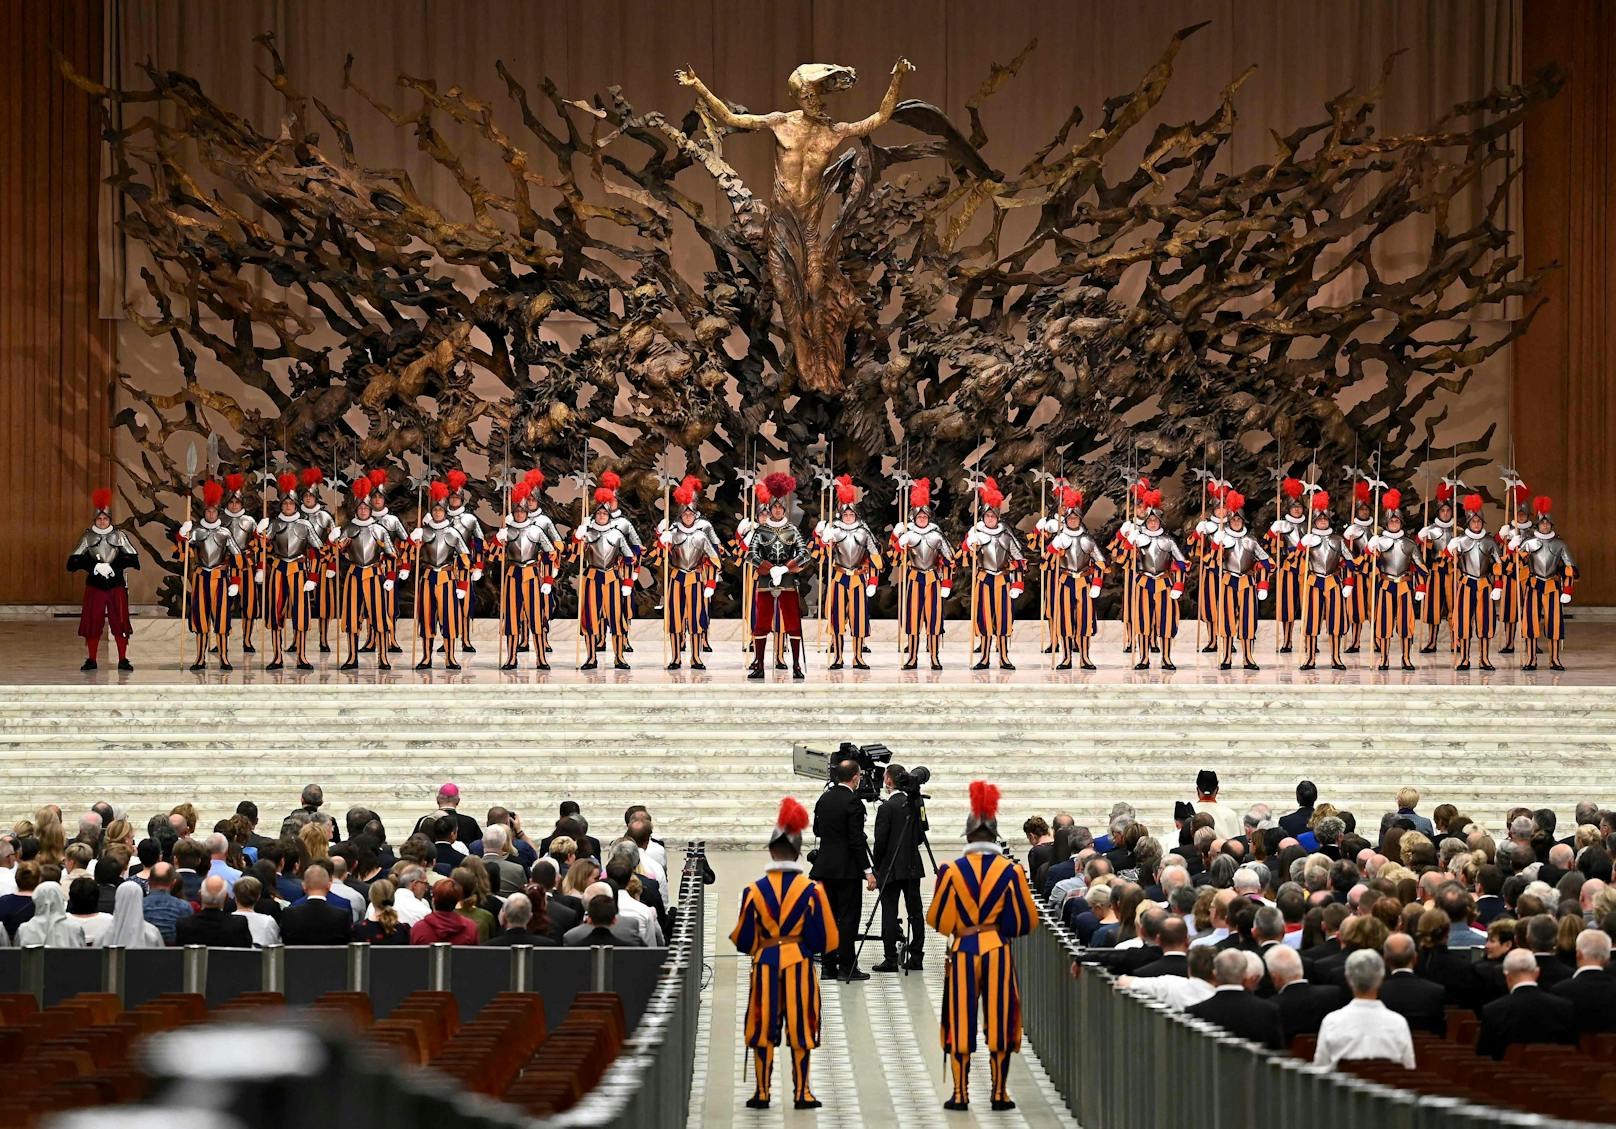 Der Papst begrüßt die neuen Schweizergardisten und deren Familien. Dabei betet er für den getöteten&nbsp;Ex-Gardisten.